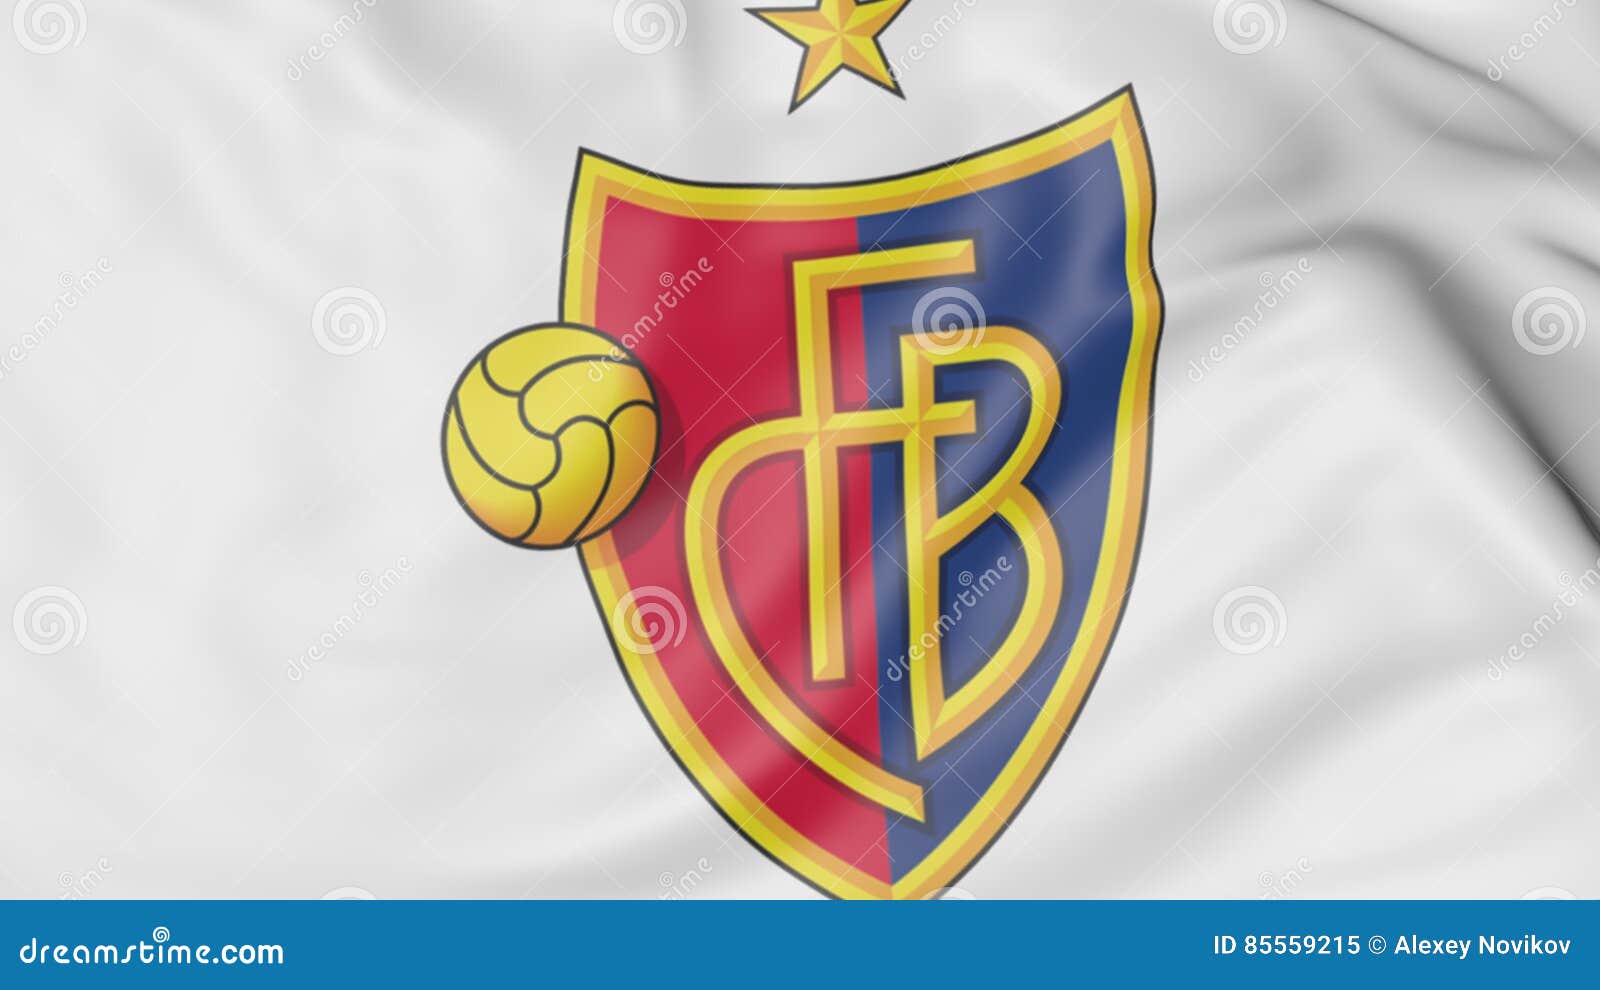 Close-up Da Bandeira De Ondulação Com S L Logotipo Do Clube Do Futebol De  Benfica Imagem de Stock Editorial - Ilustração de têxtil, sinal: 85008869